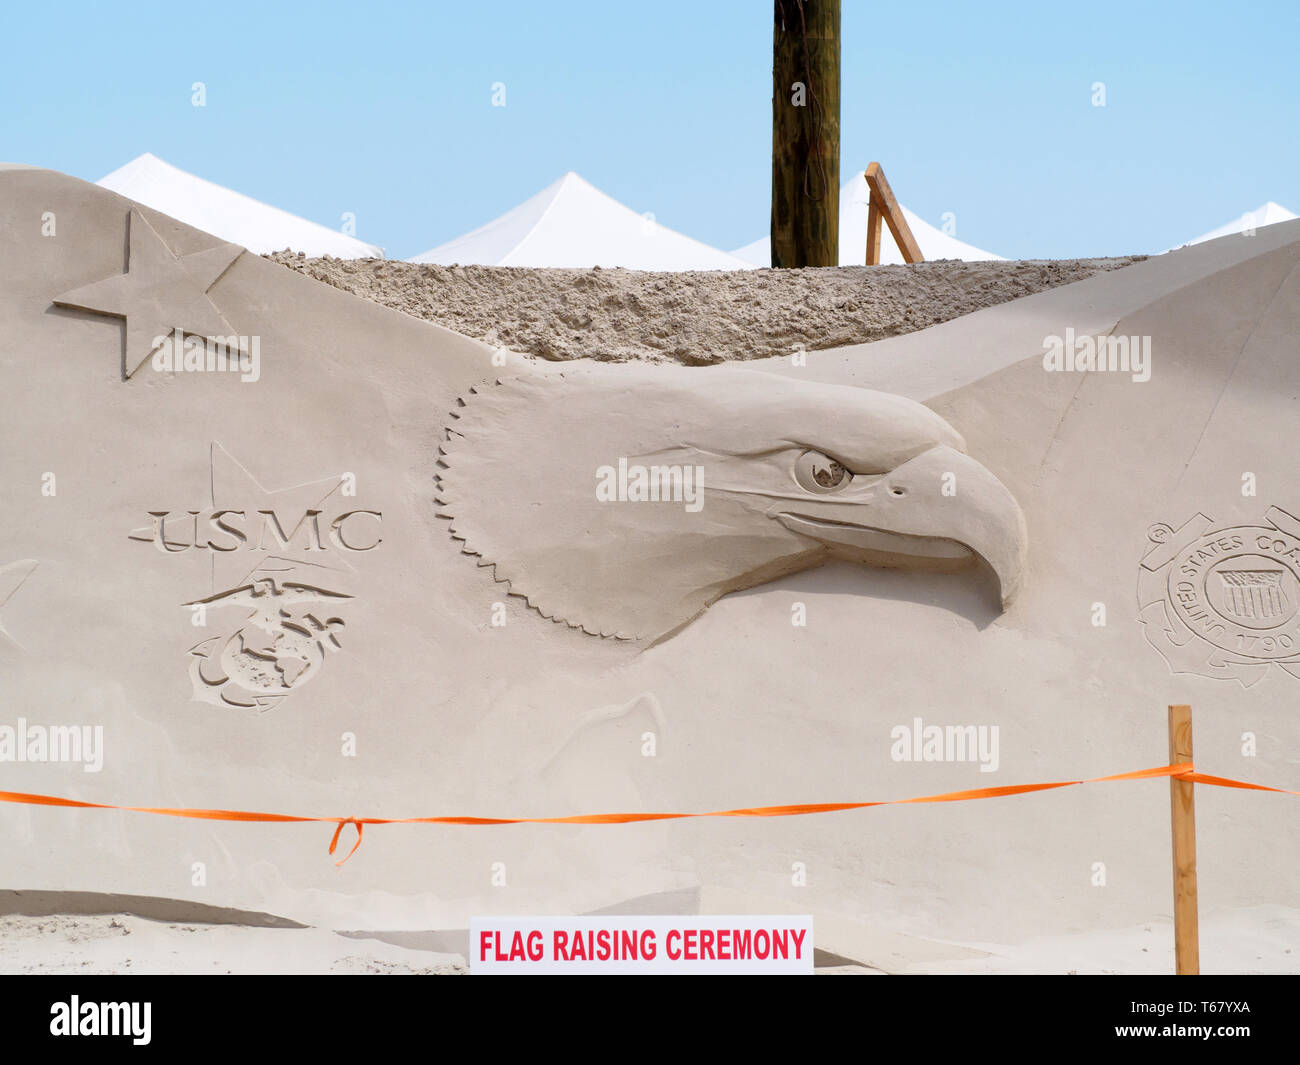 United States Marine Corps et logo eagle sculptés dans le sable à la Texas 2019 Sandfest à Port Aransas, Texas USA. Banque D'Images